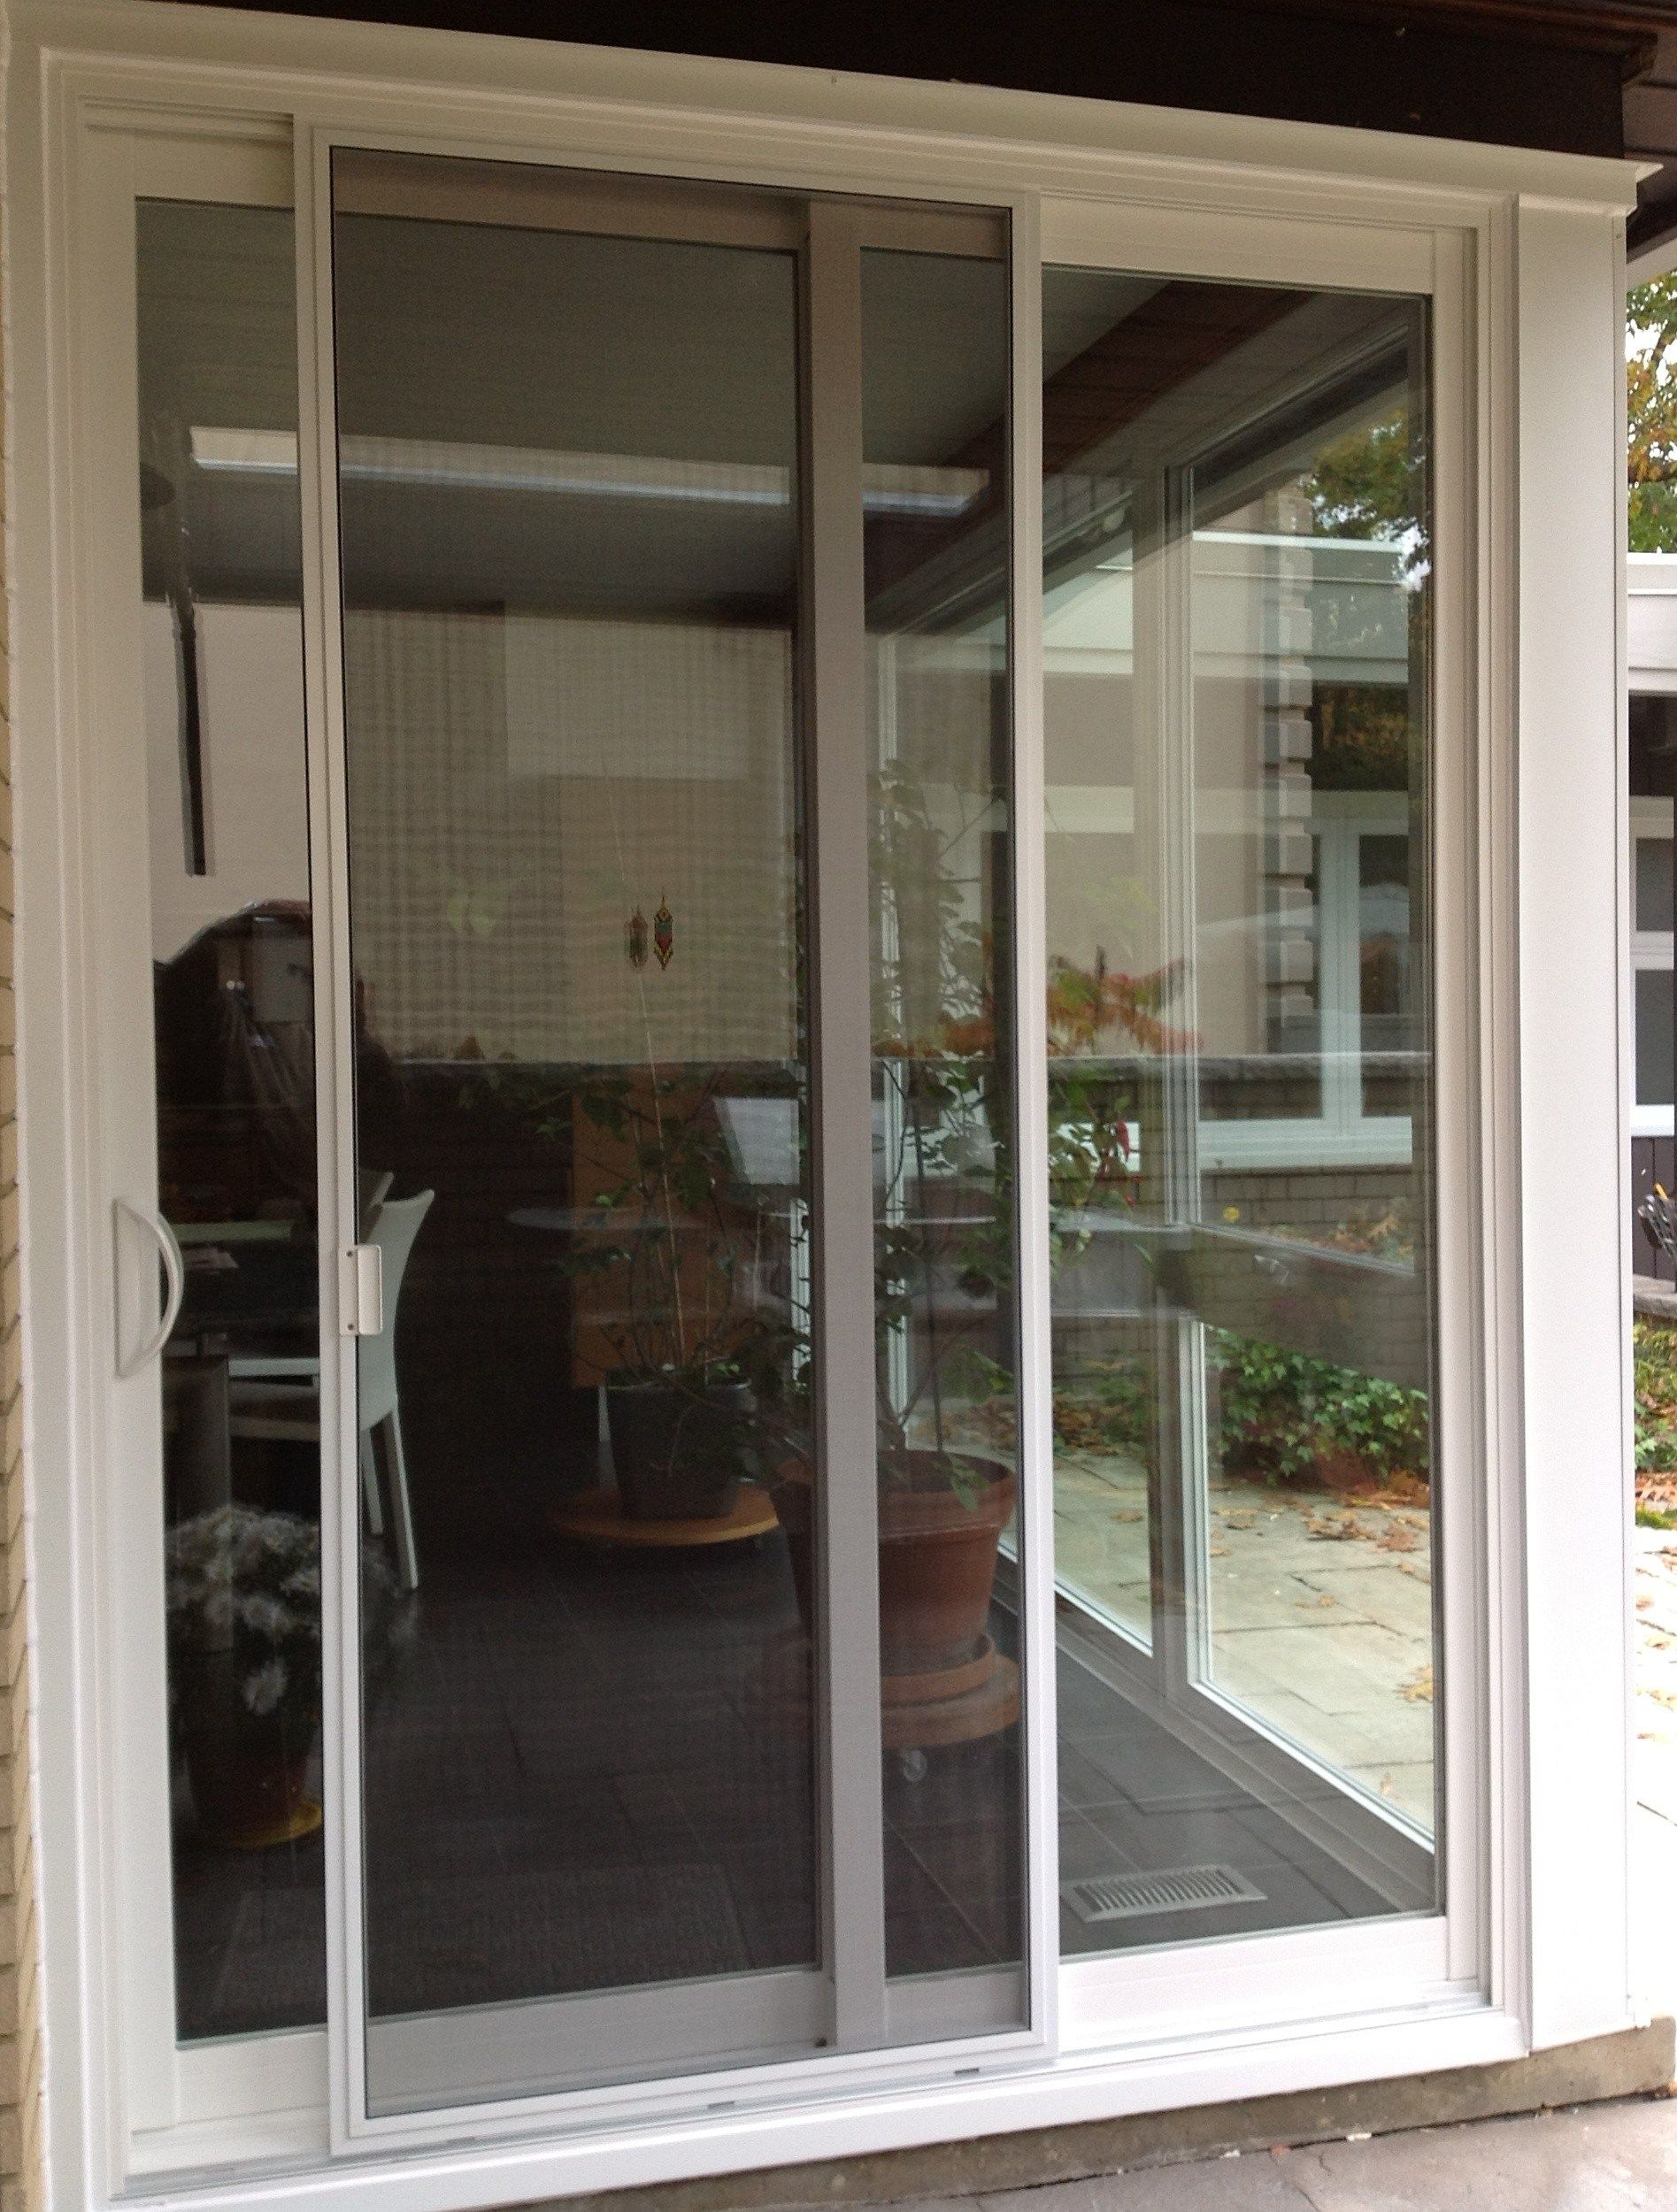 Best Of Door Handles For Sliding Glass Doors Home Decor with regard to proportions 1895 X 2500